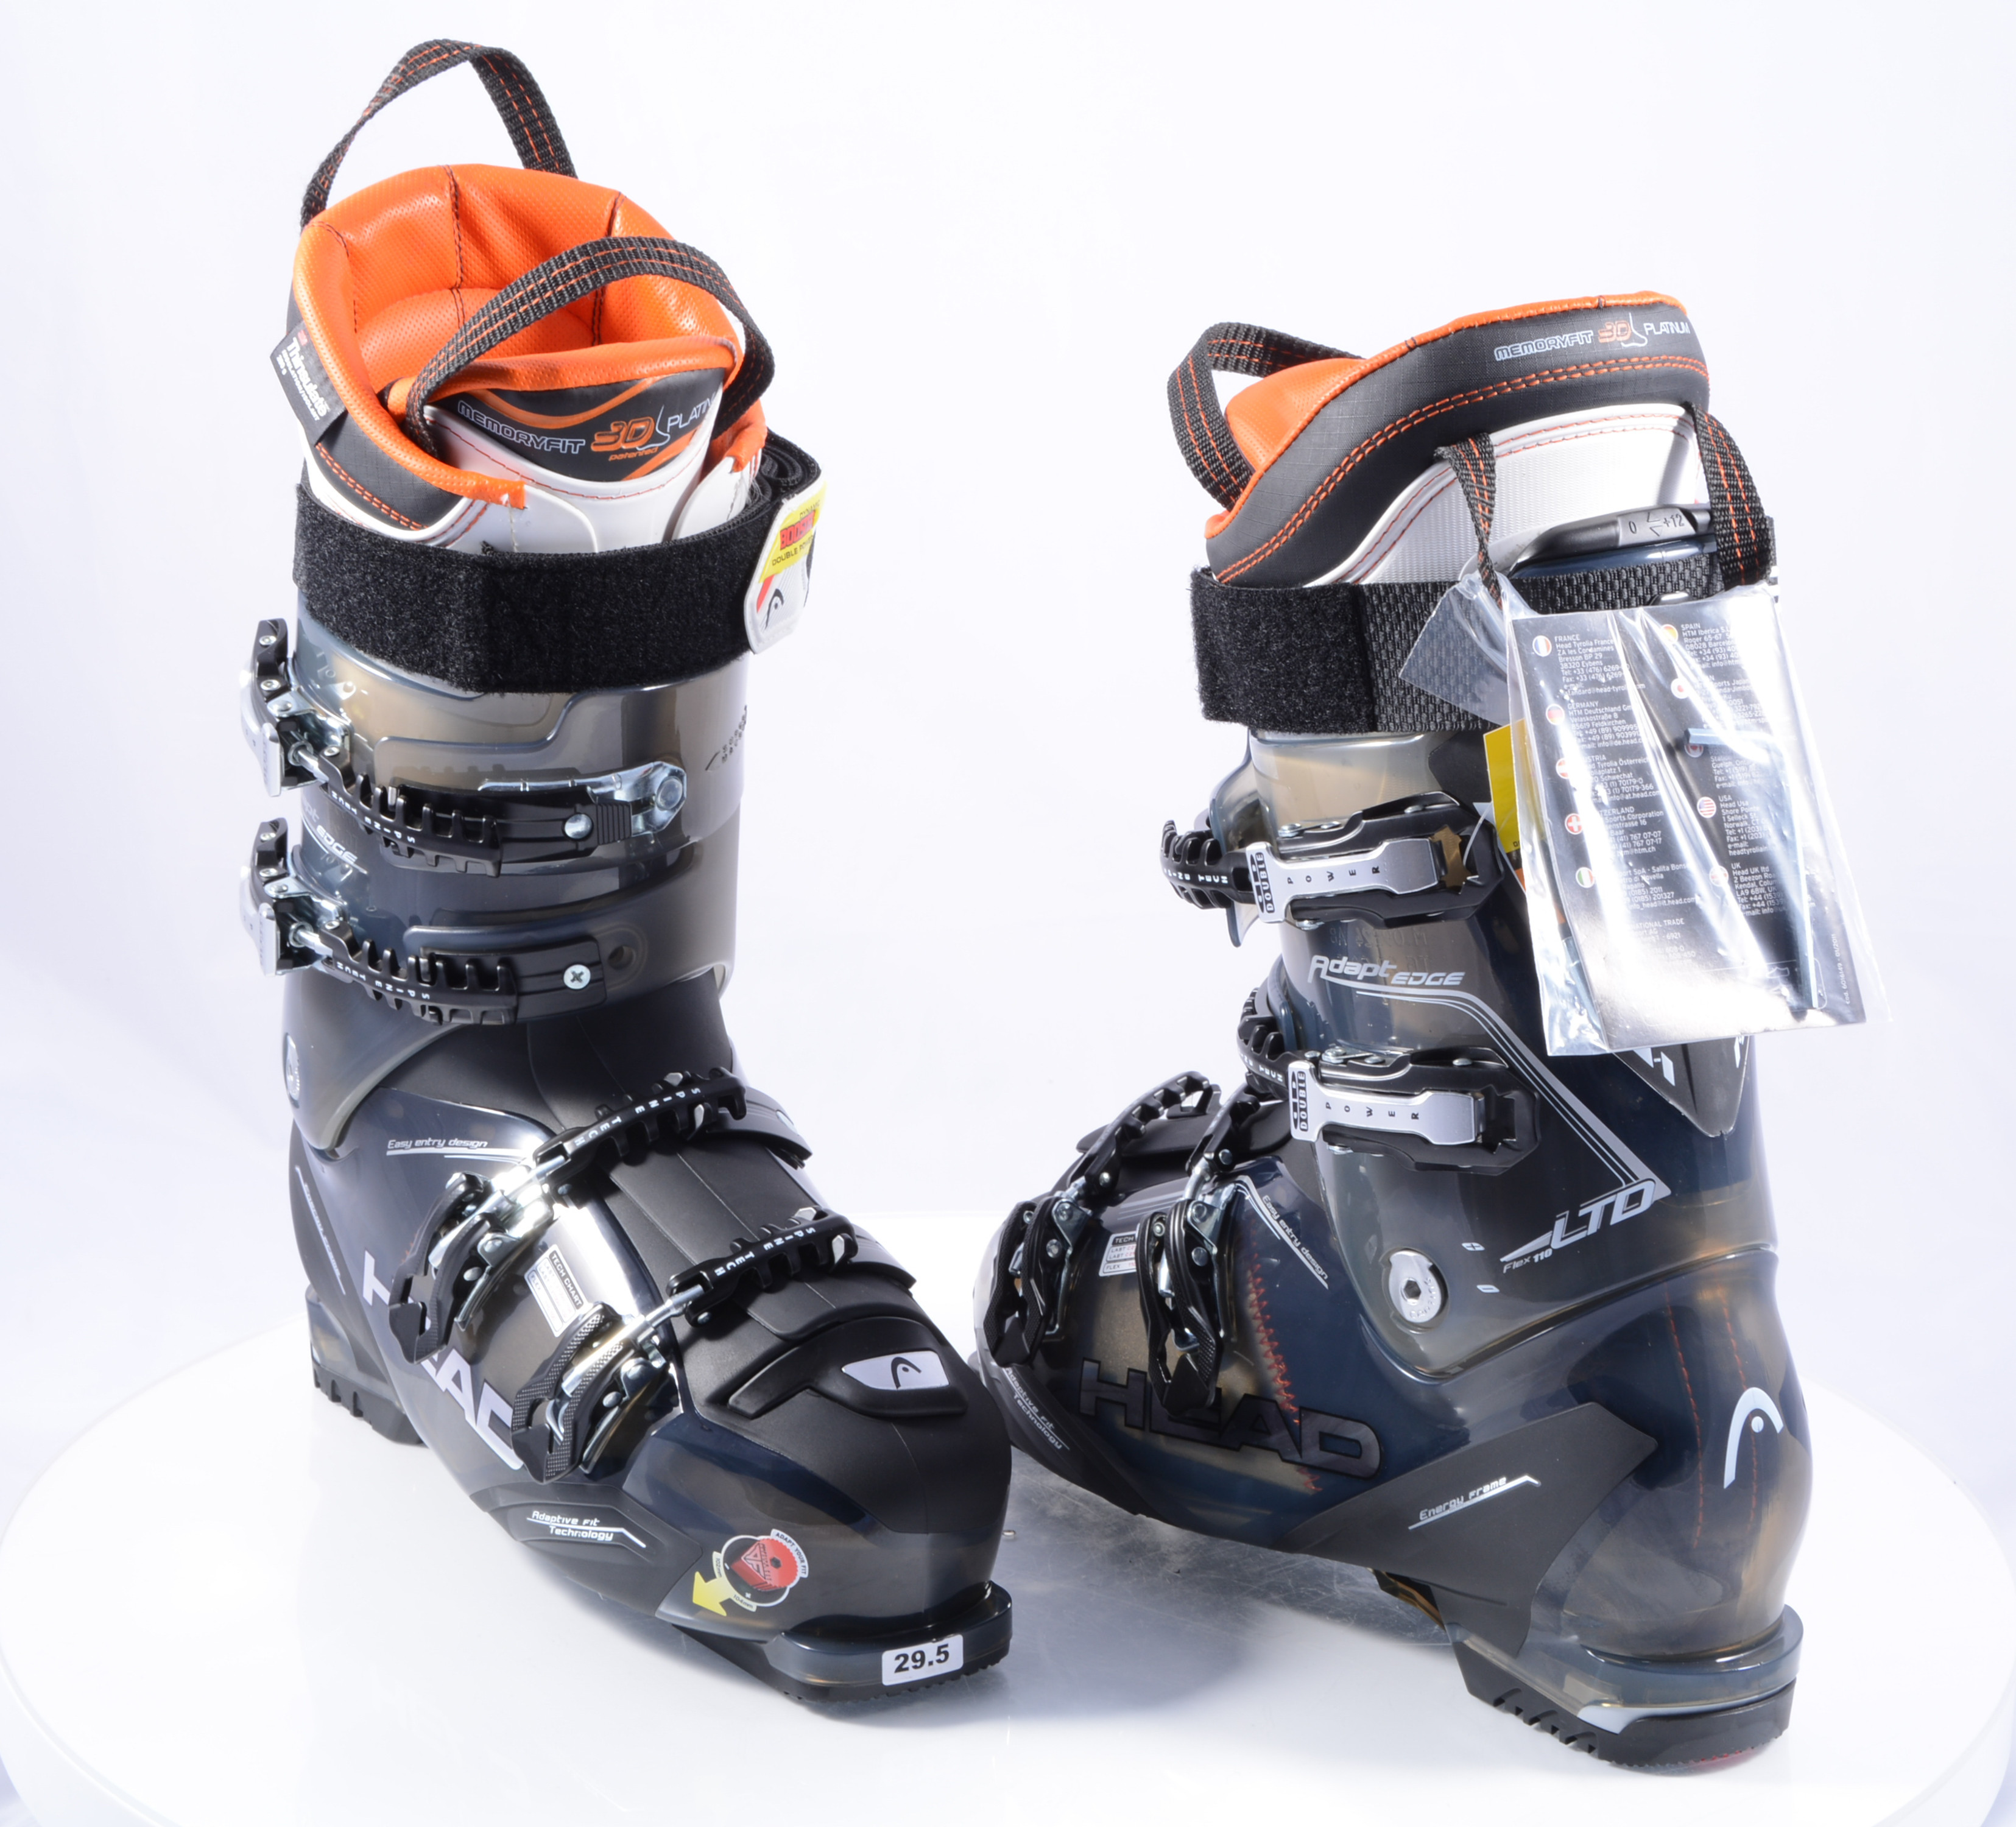 nieuwe skischoenen HEAD ADAPT EDGE LTD 110, ( NIEUWE SCHAAL / binnenschoen ) - Mardosport.nl